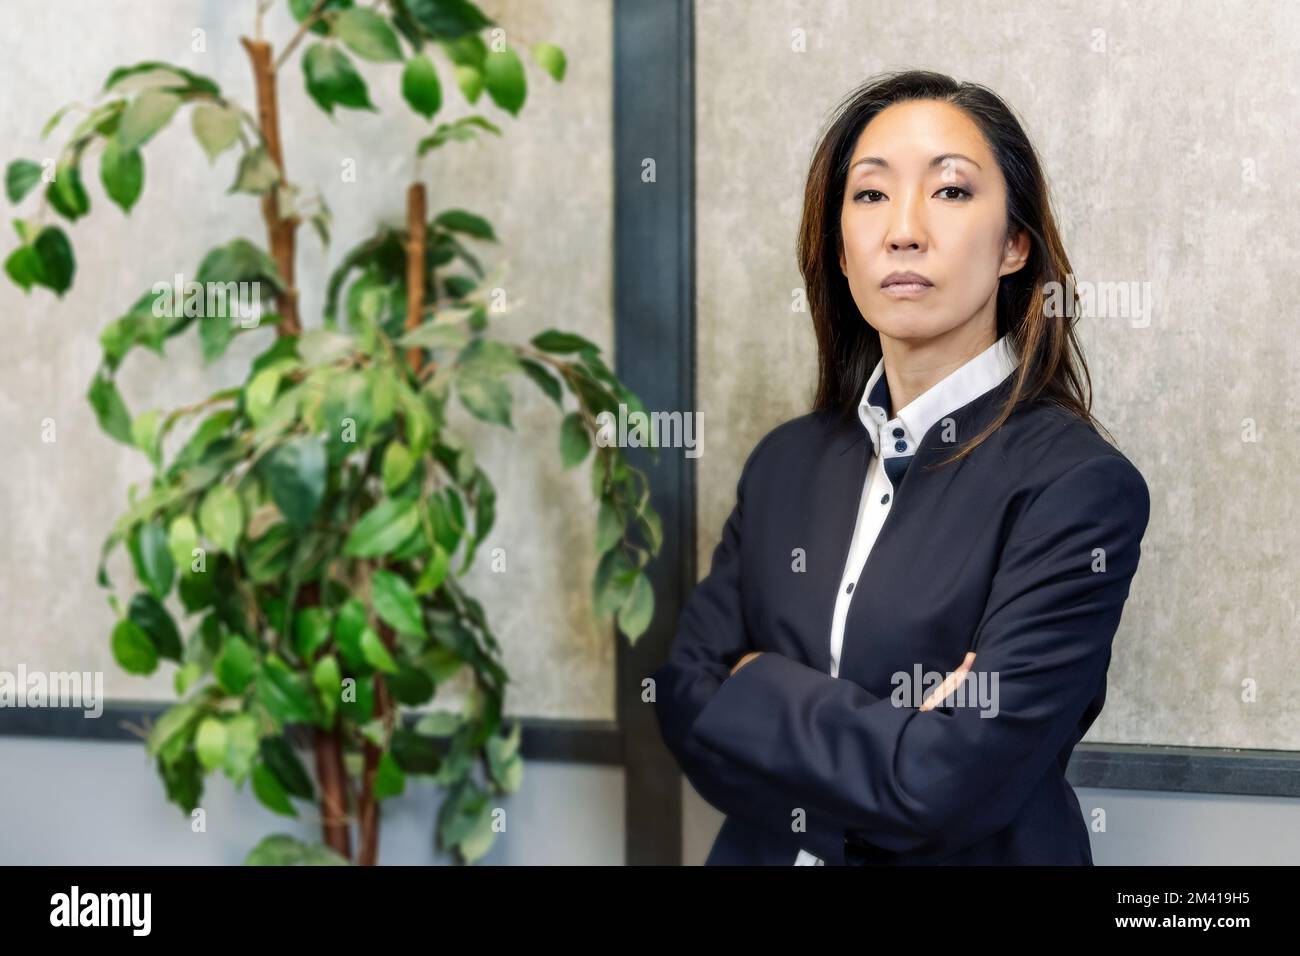 Selbstbewusste asiatische Unternehmerin im Anzug, die Arme kreuzt und in die Kamera schaut, während sie in der Nähe einer üppigen Topfpflanze im Büro steht Stockfoto